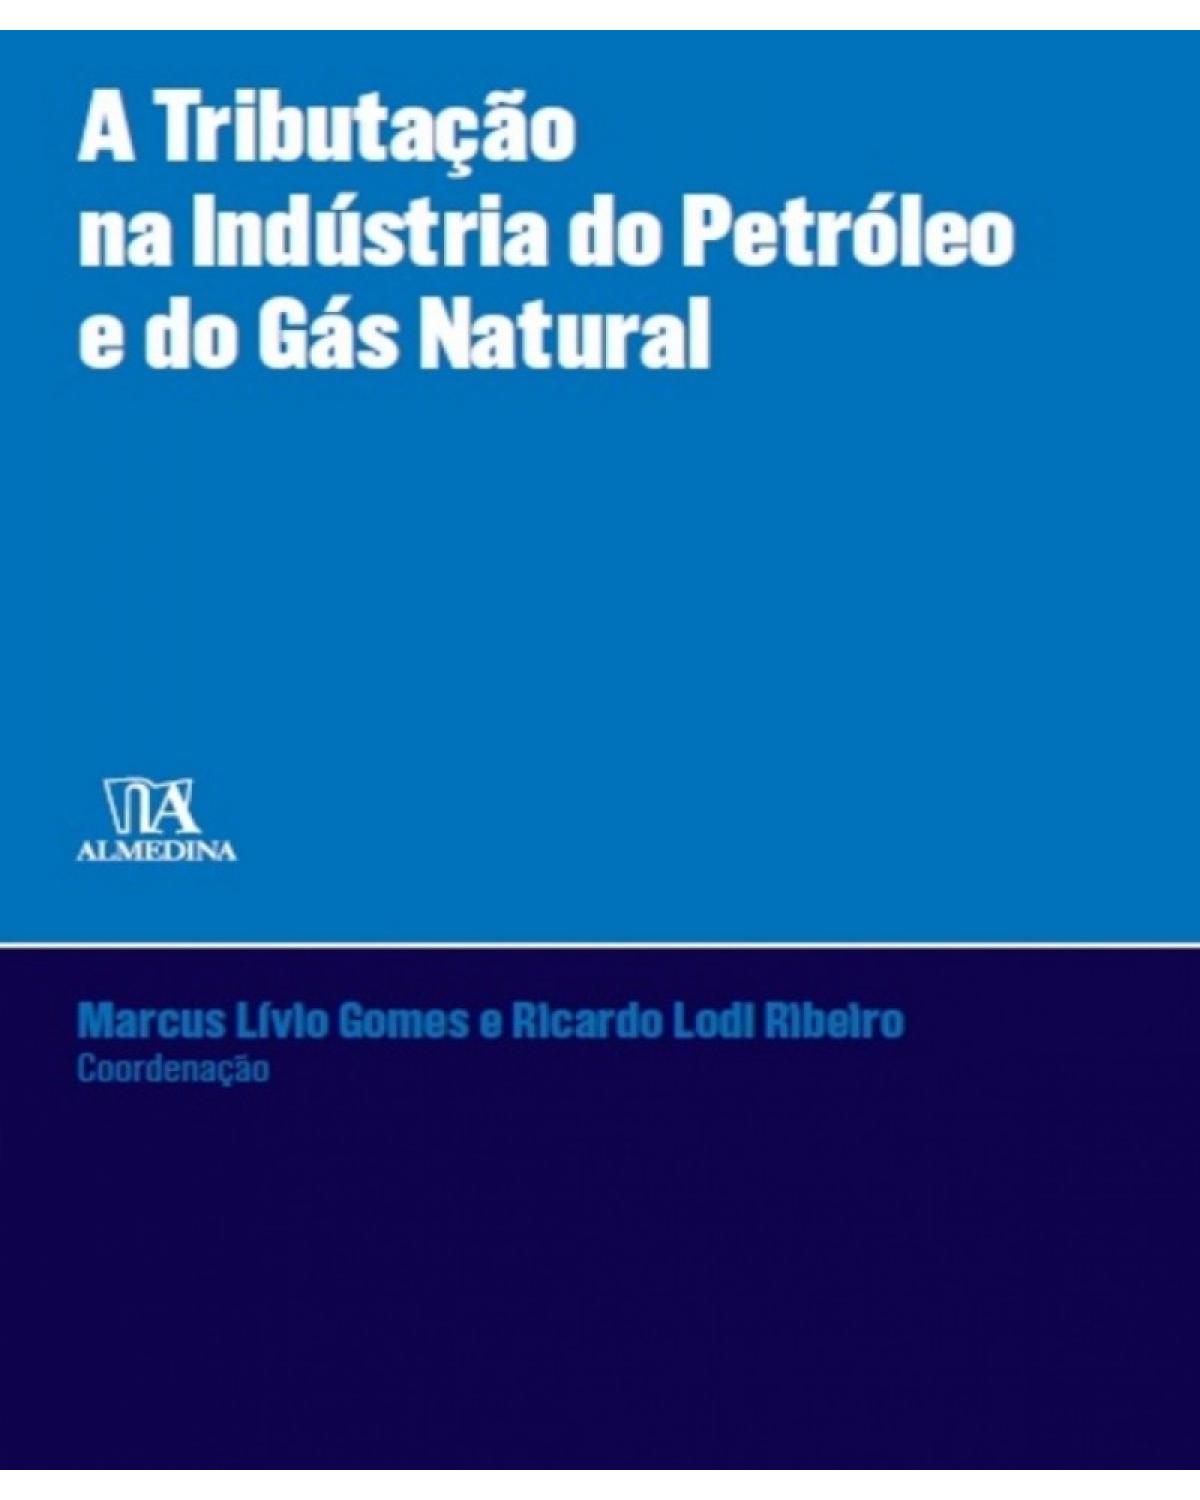 A Tributação na Indústria do Petróleo e do Gás Natural